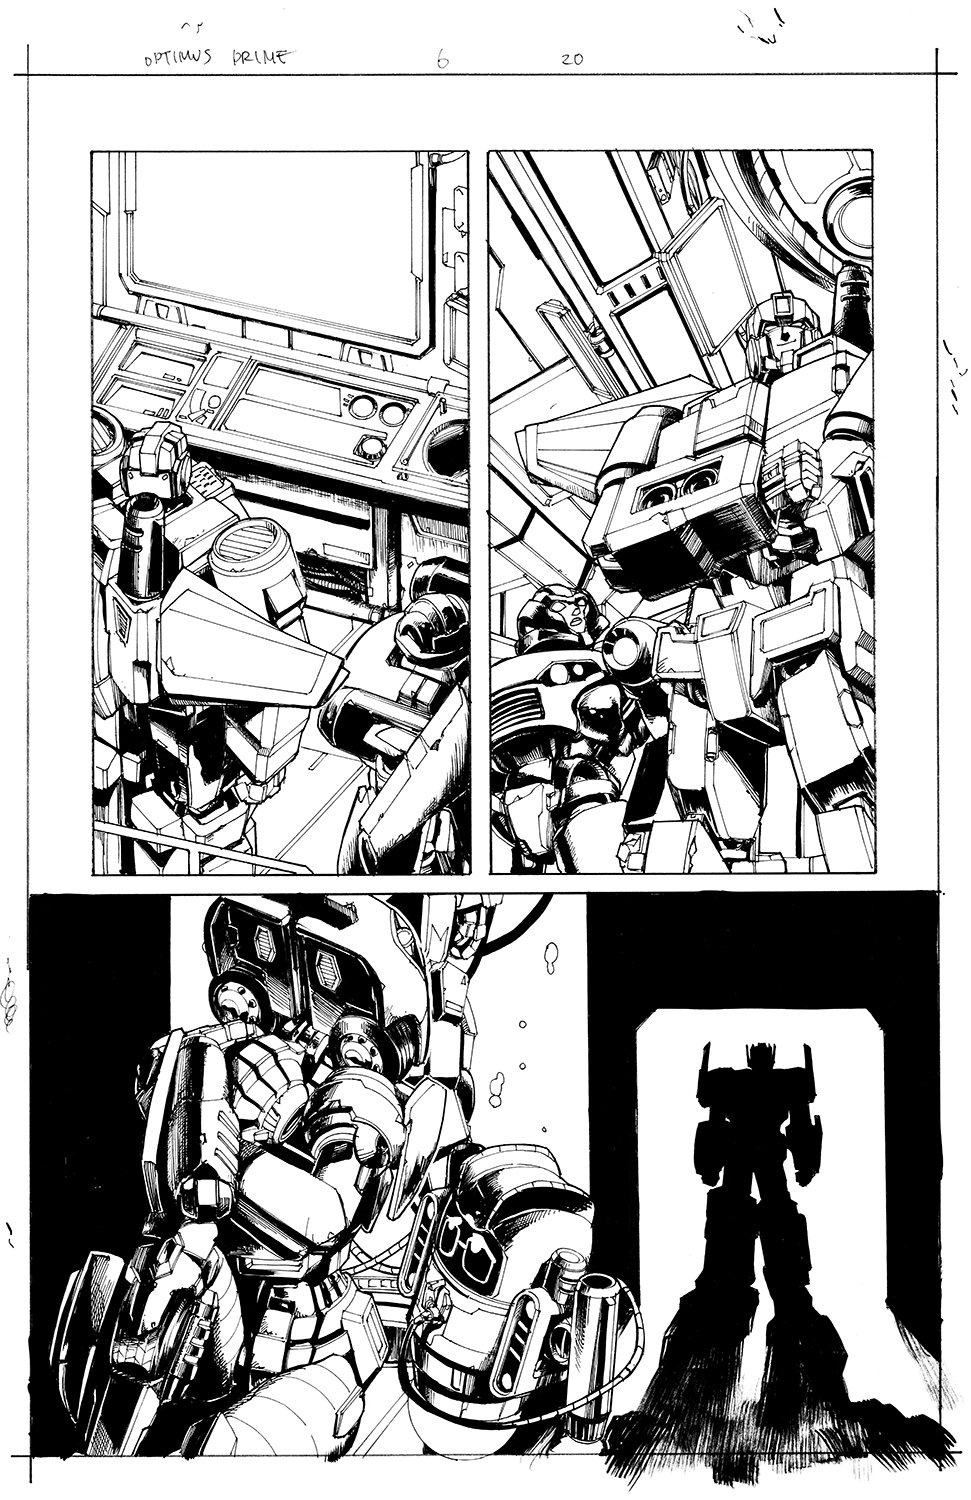 Optimus Prime #6 Page 20